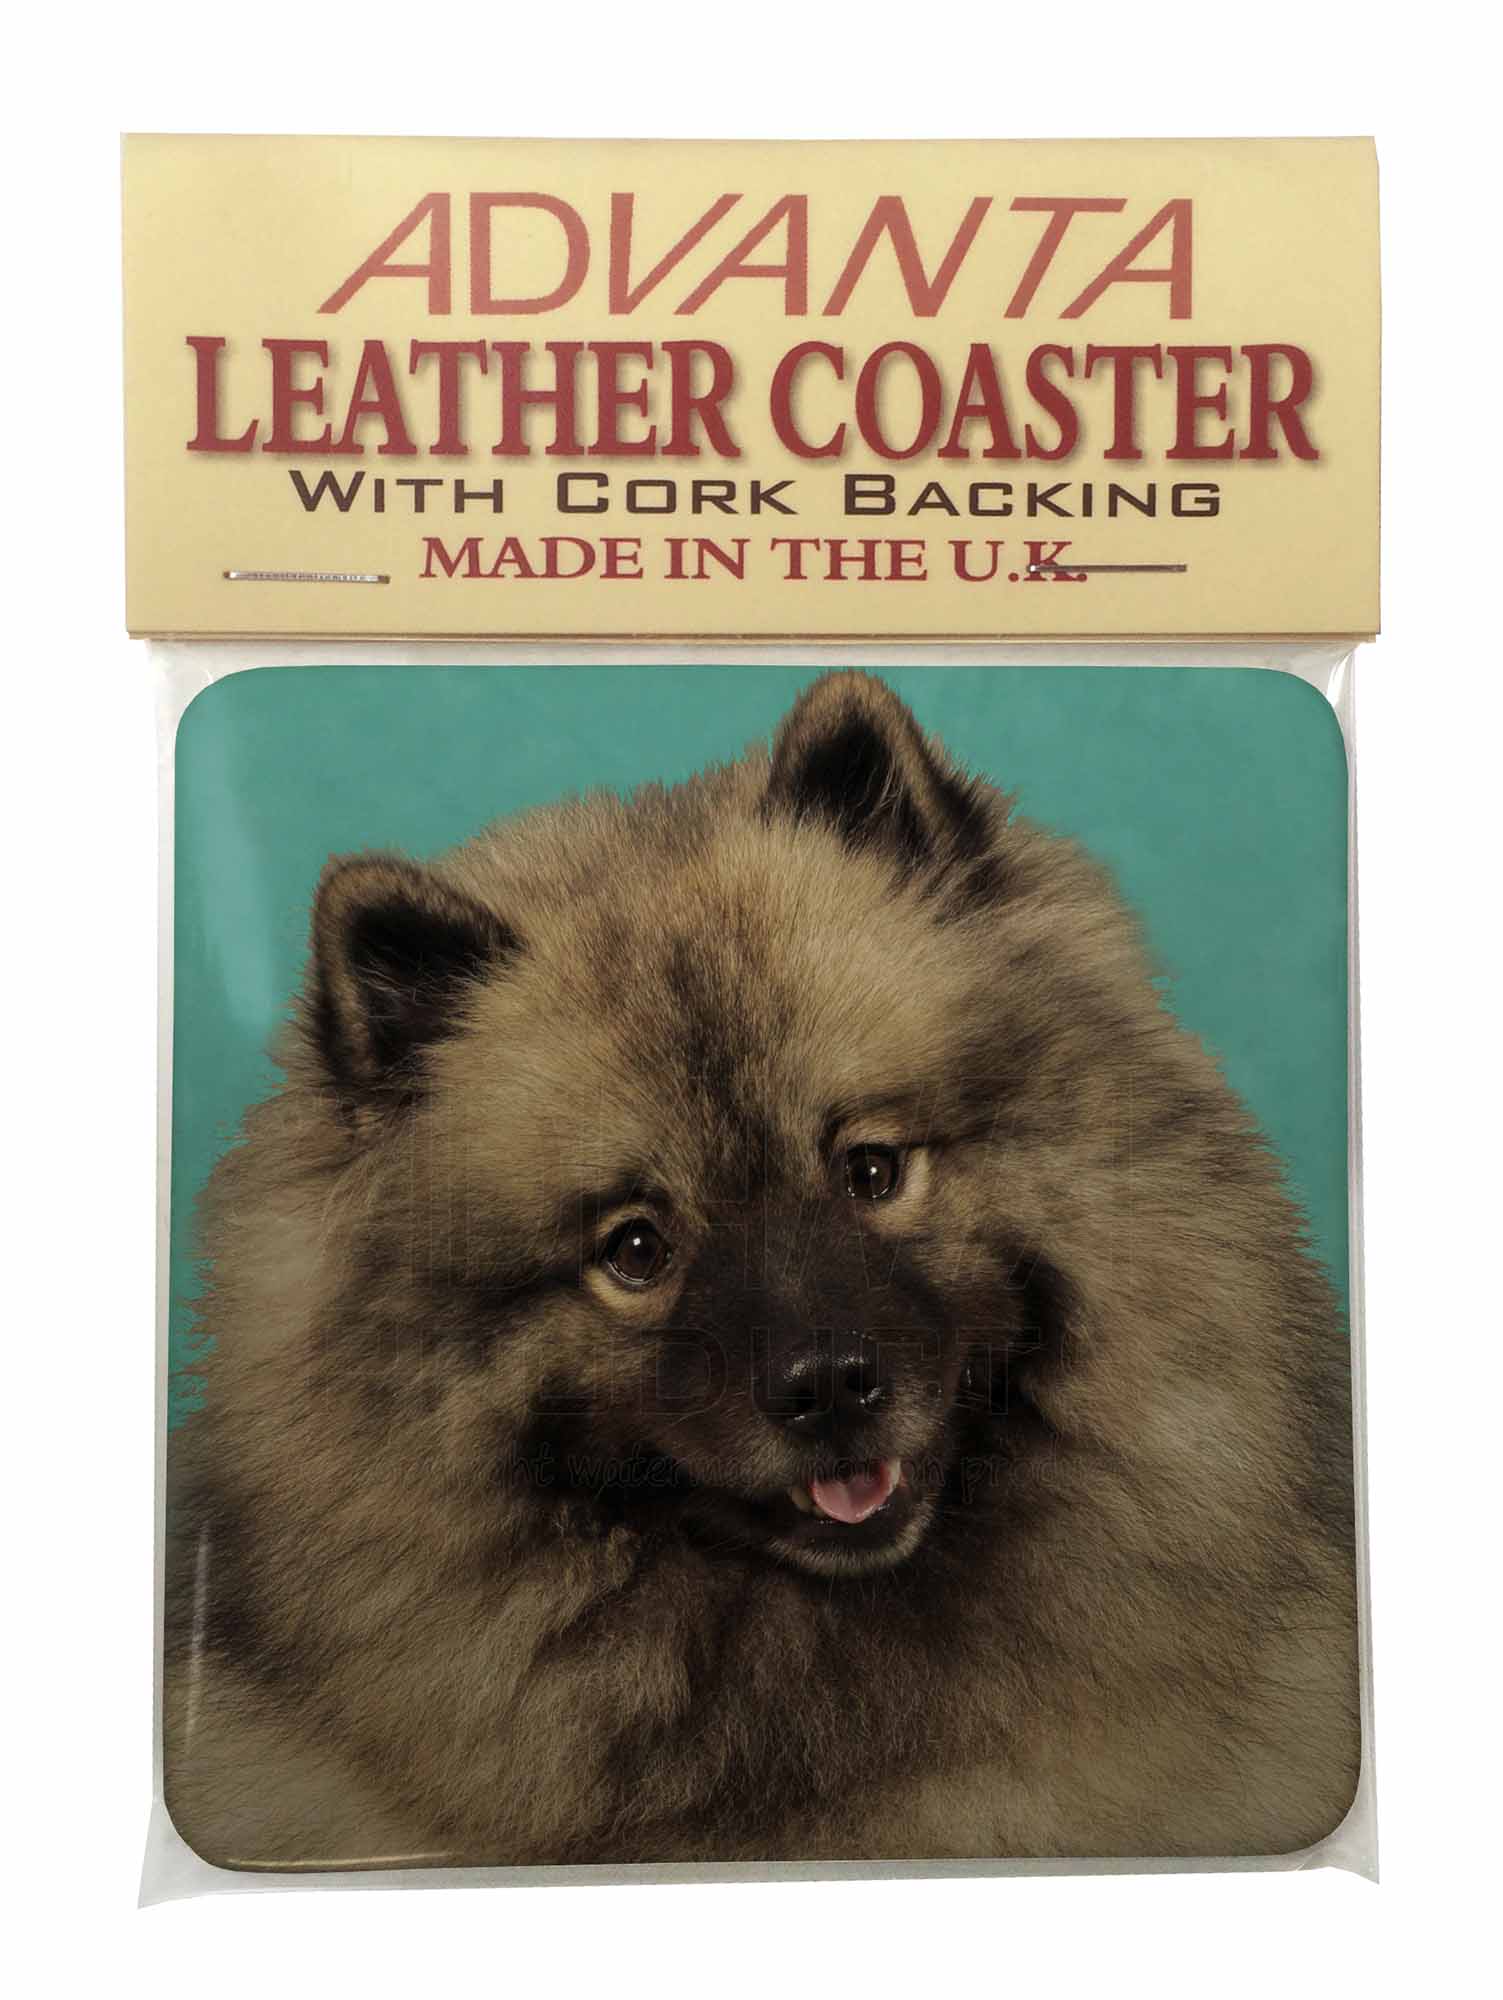 Keeshond Dog Single Leather Photo Coaster Animal Breed Gift Ad Kee1sc Ebay